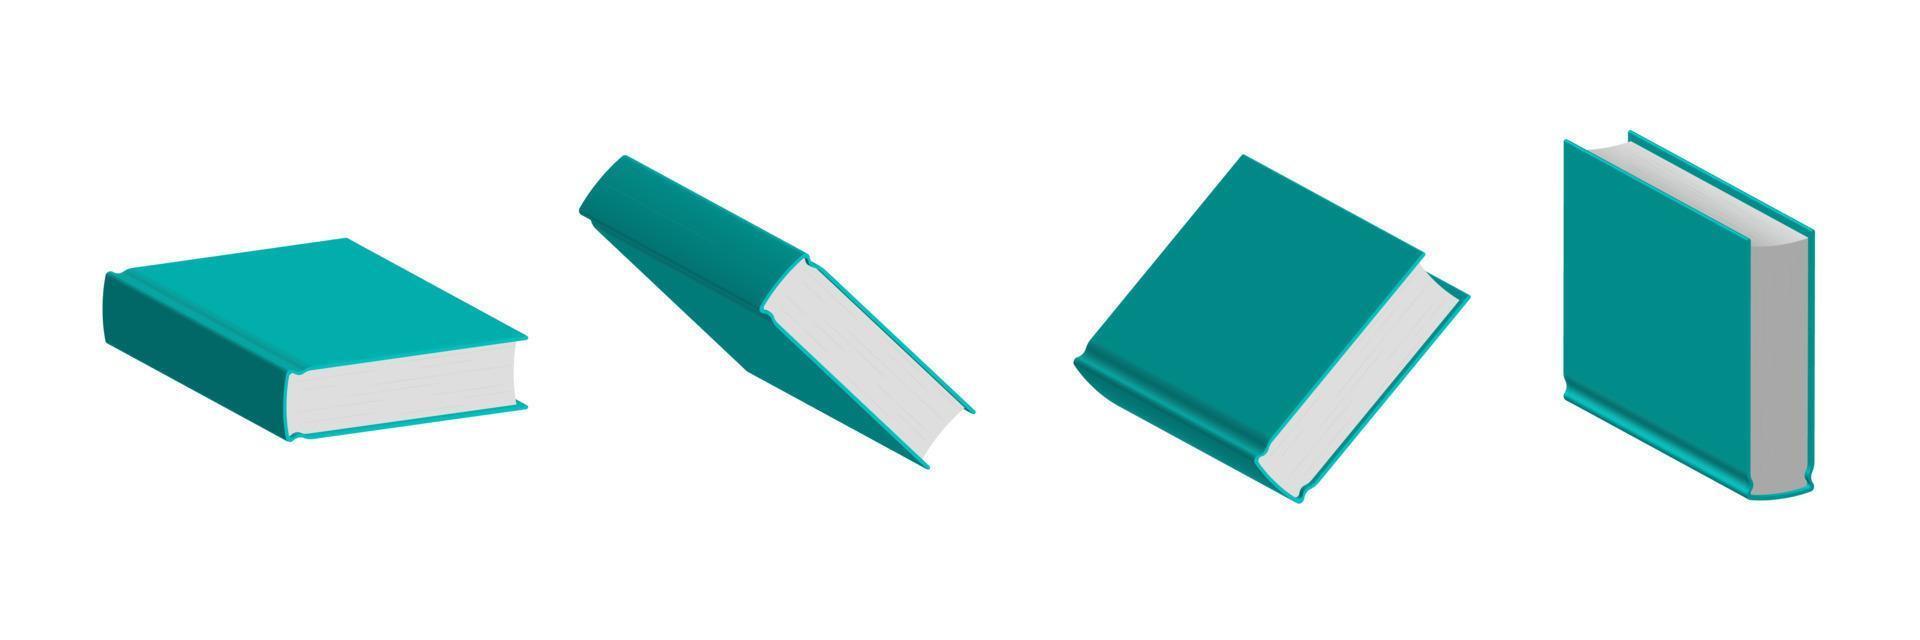 uppsättning stängda gröna mentolböcker i olika positioner för bokhandel vektor